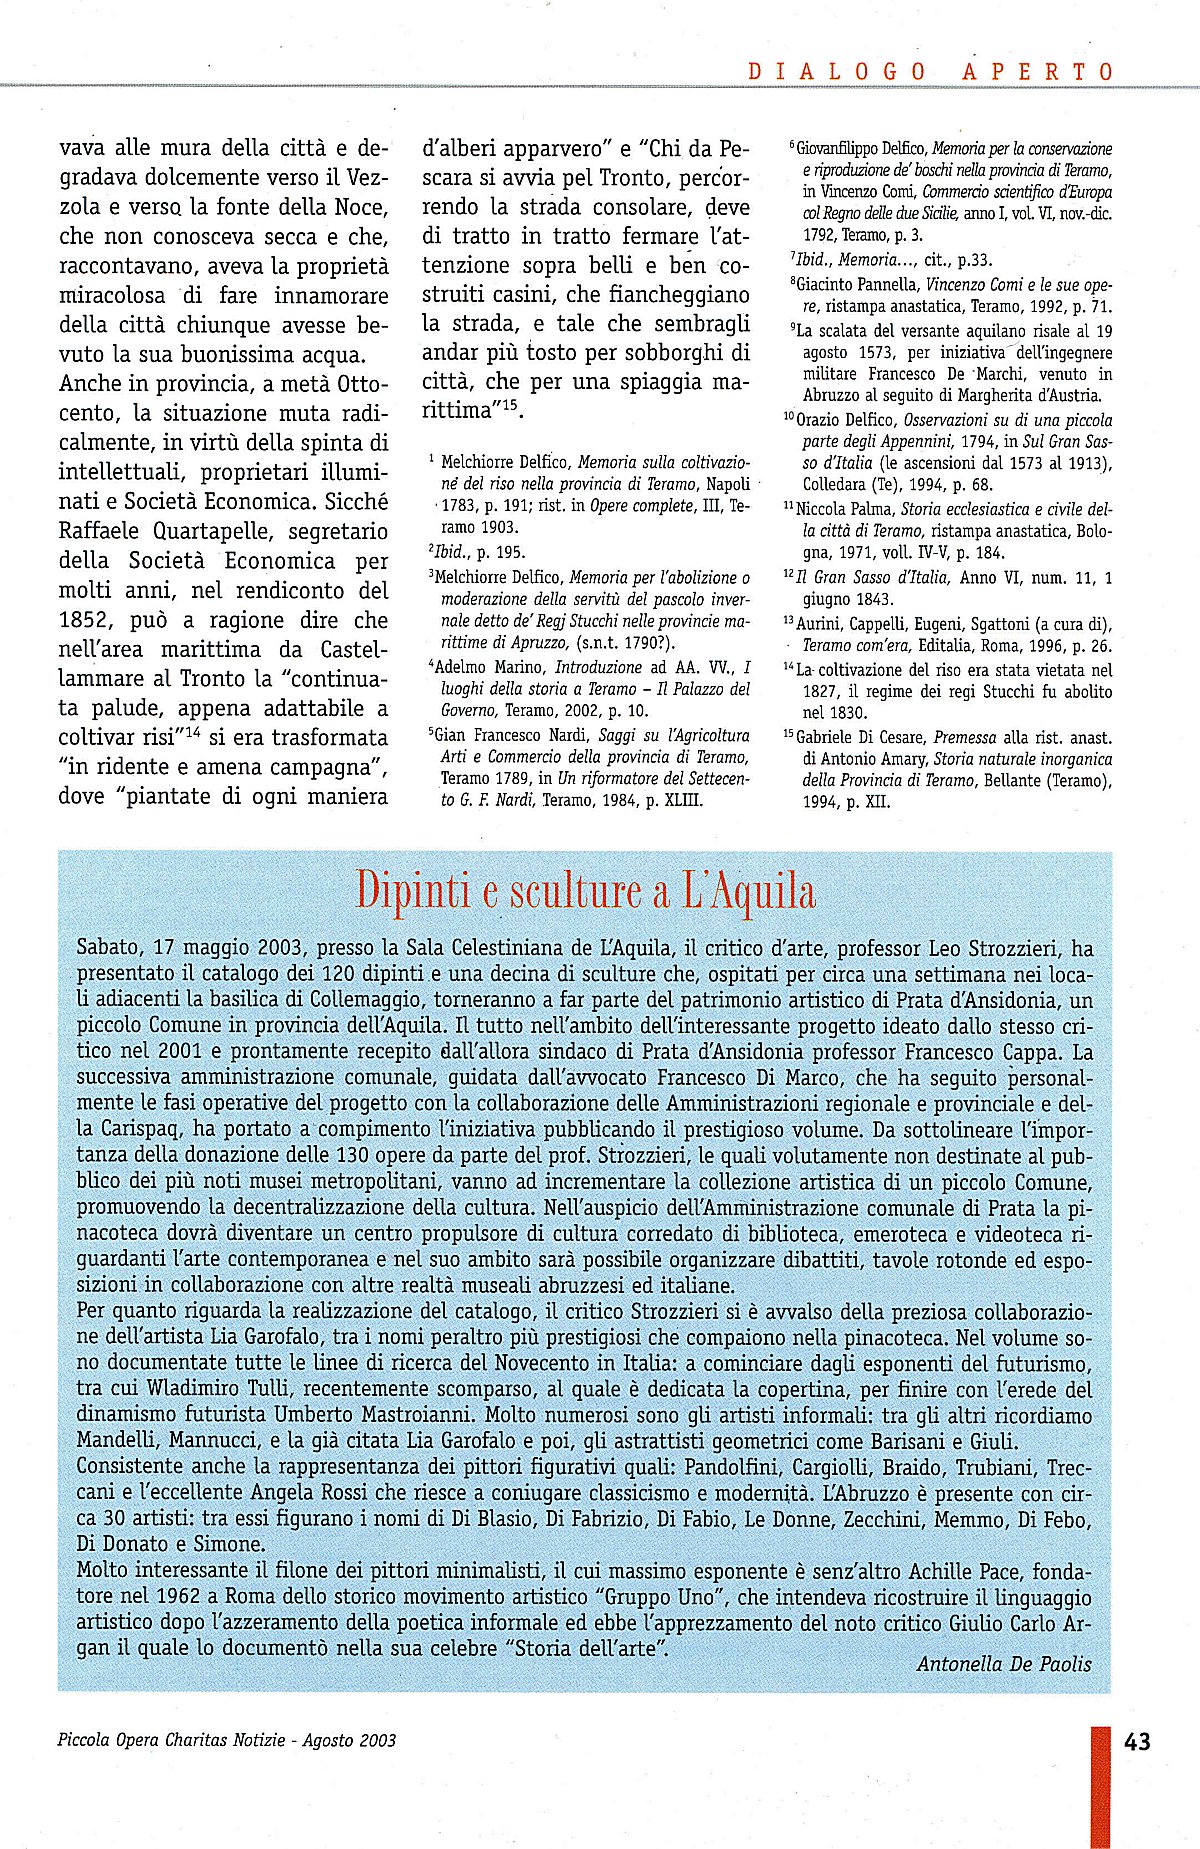 "Piccola Opera Charitas", anno III, n. 2, maggio-agosto 2003, pag. 43